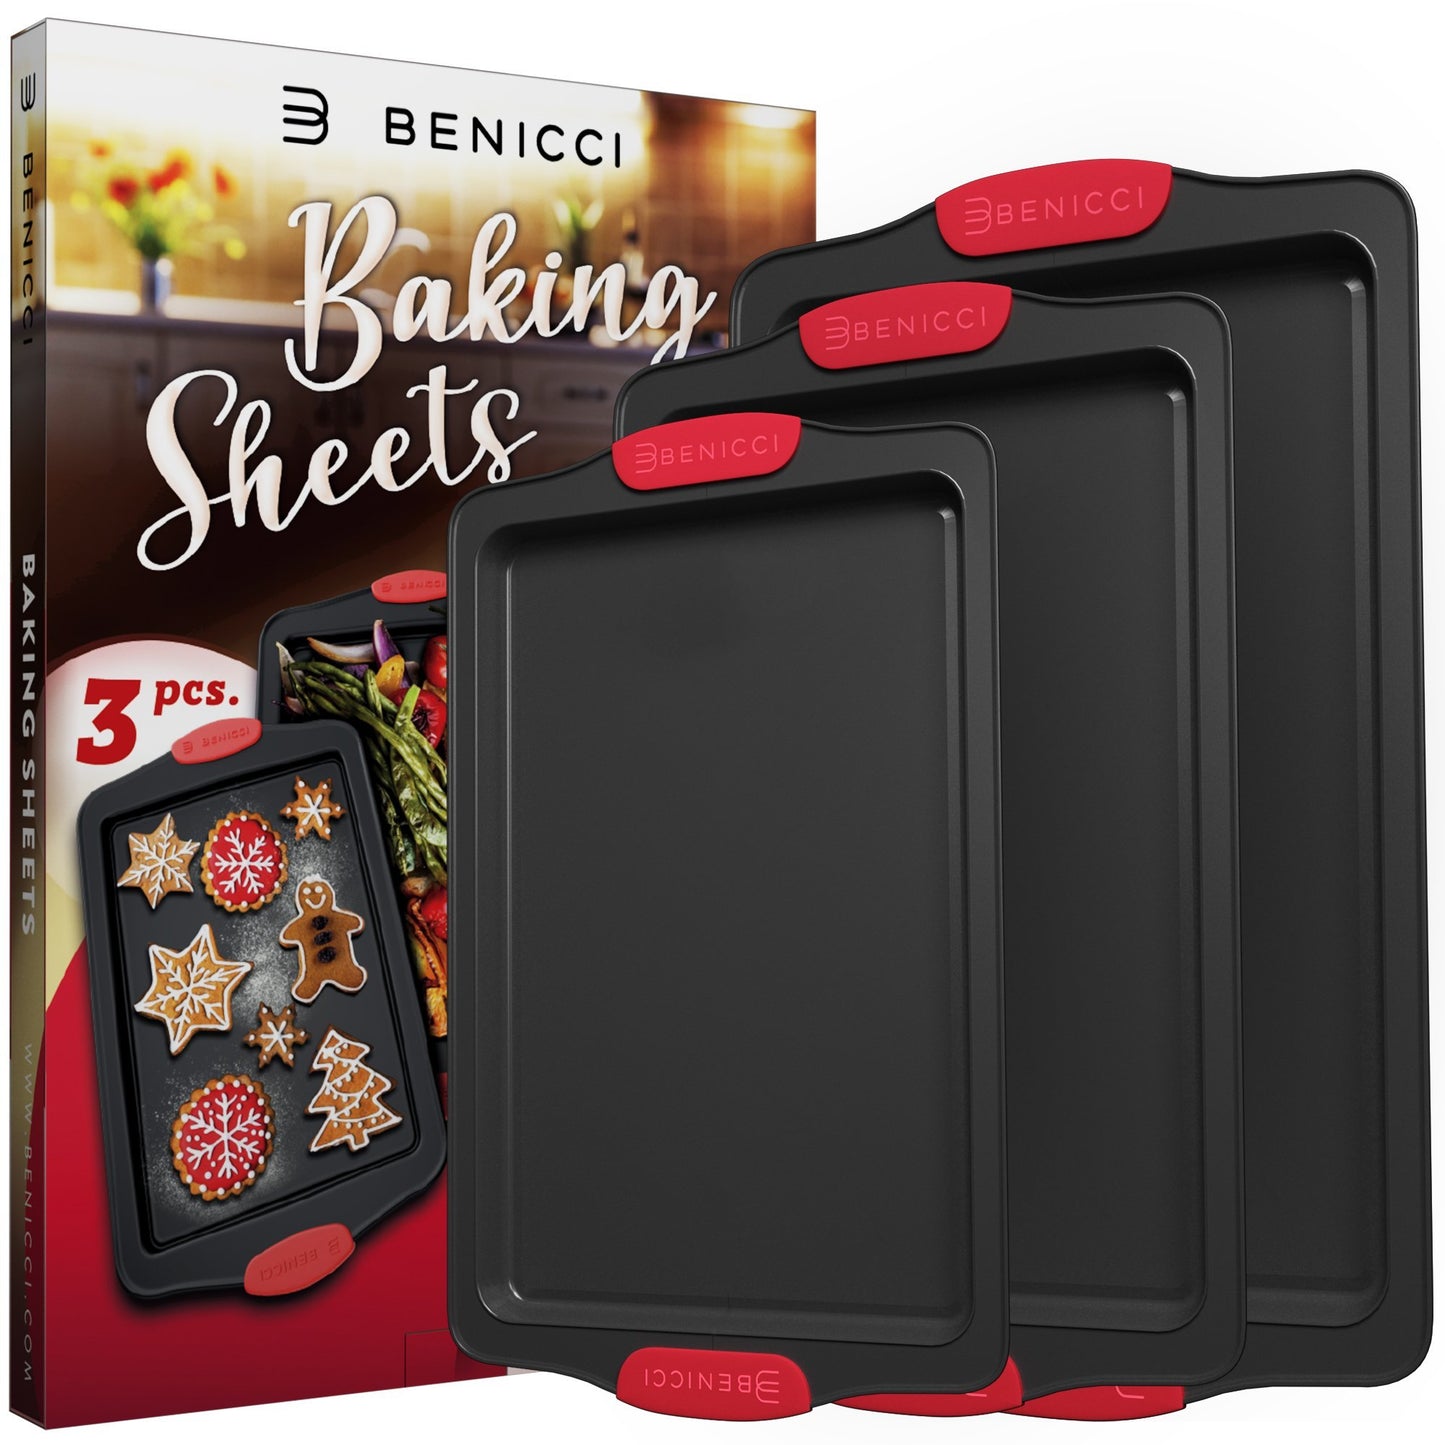 3 Piece Baking Sheet Pan Set Nonstick Cookie Sheets Bakeware Sets